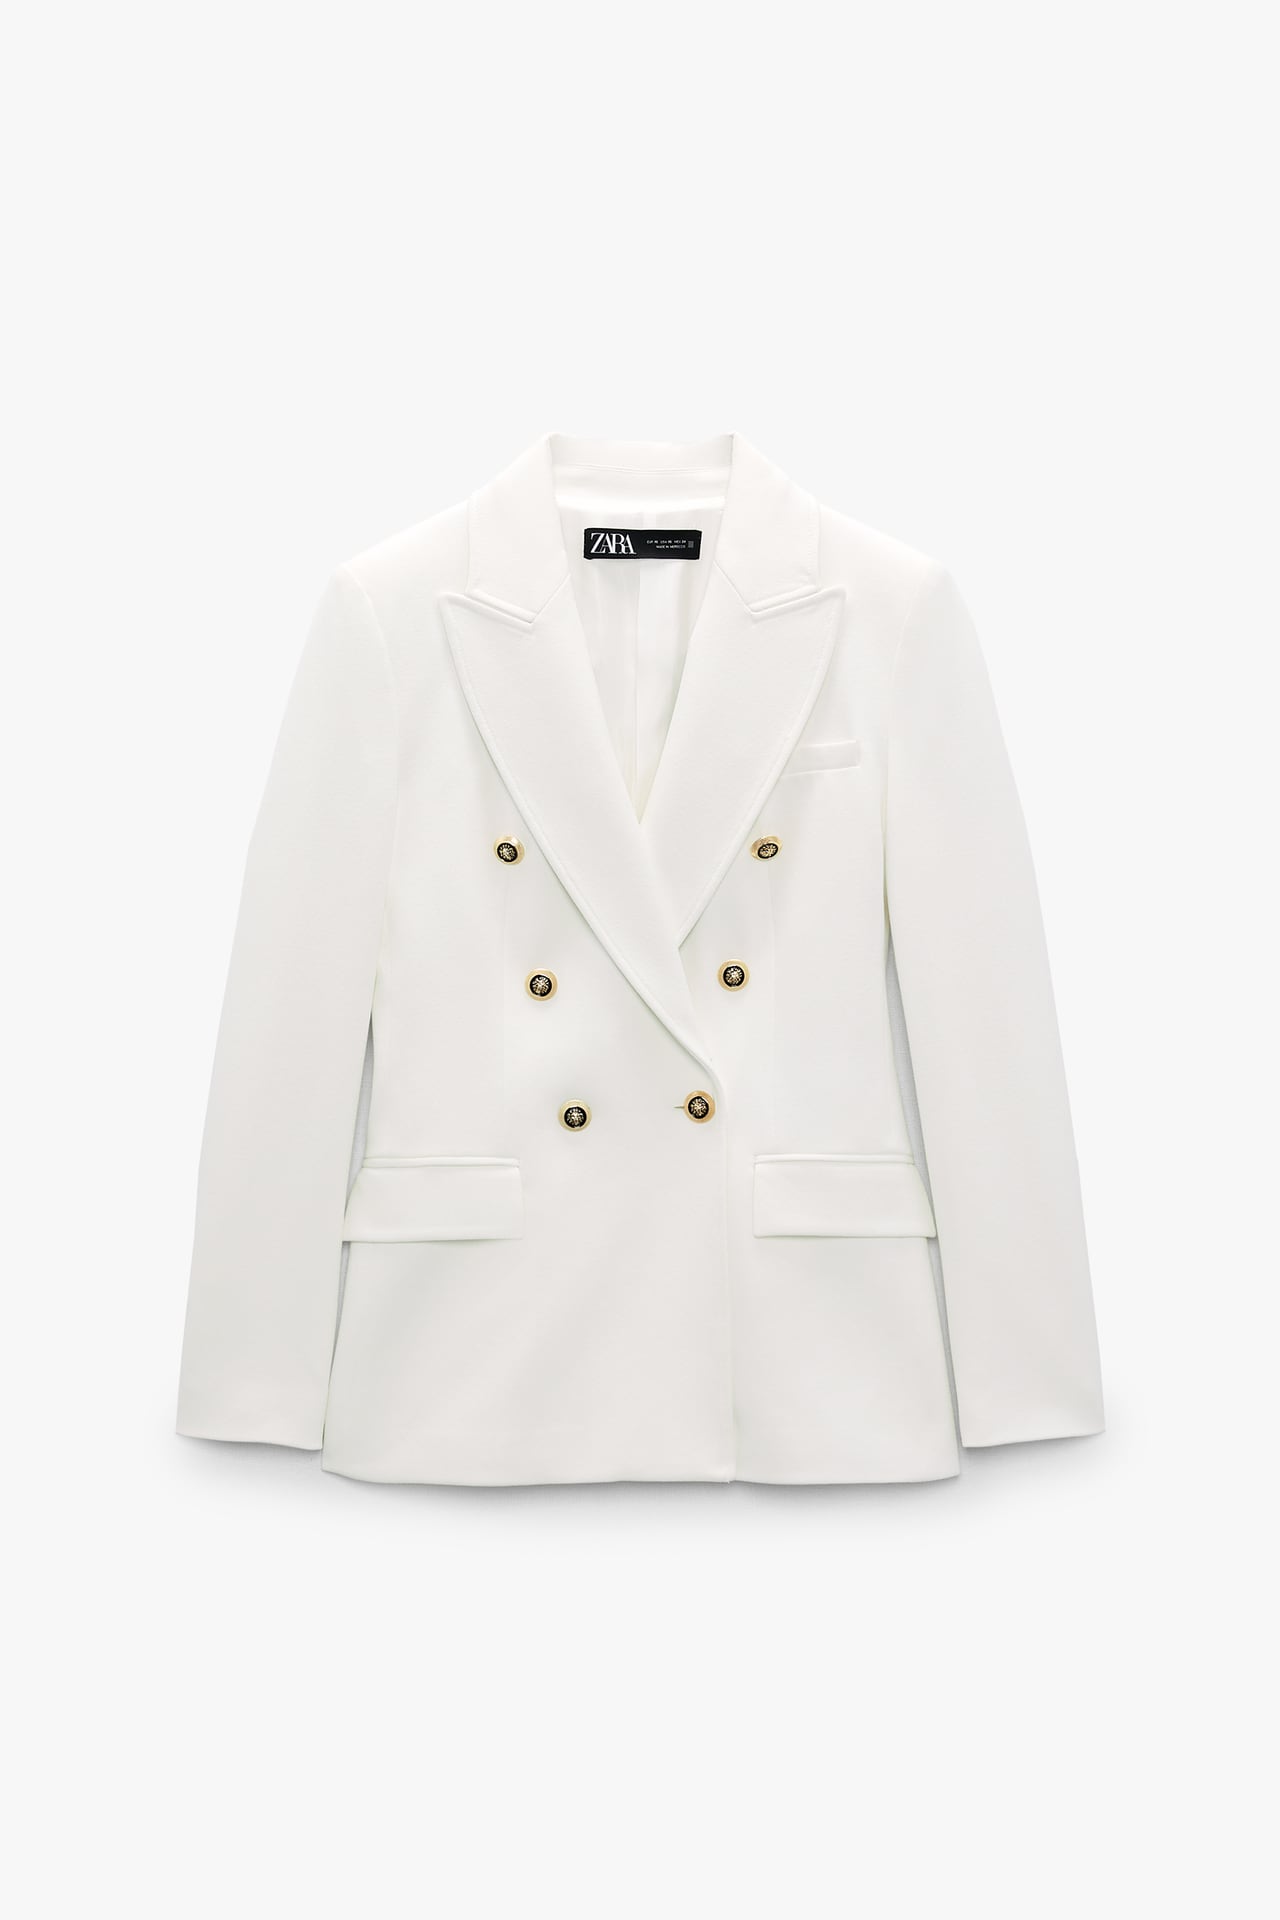 20 mẫu áo blazer mới nhất của Zara, H&M và Mango  - Ảnh 1.